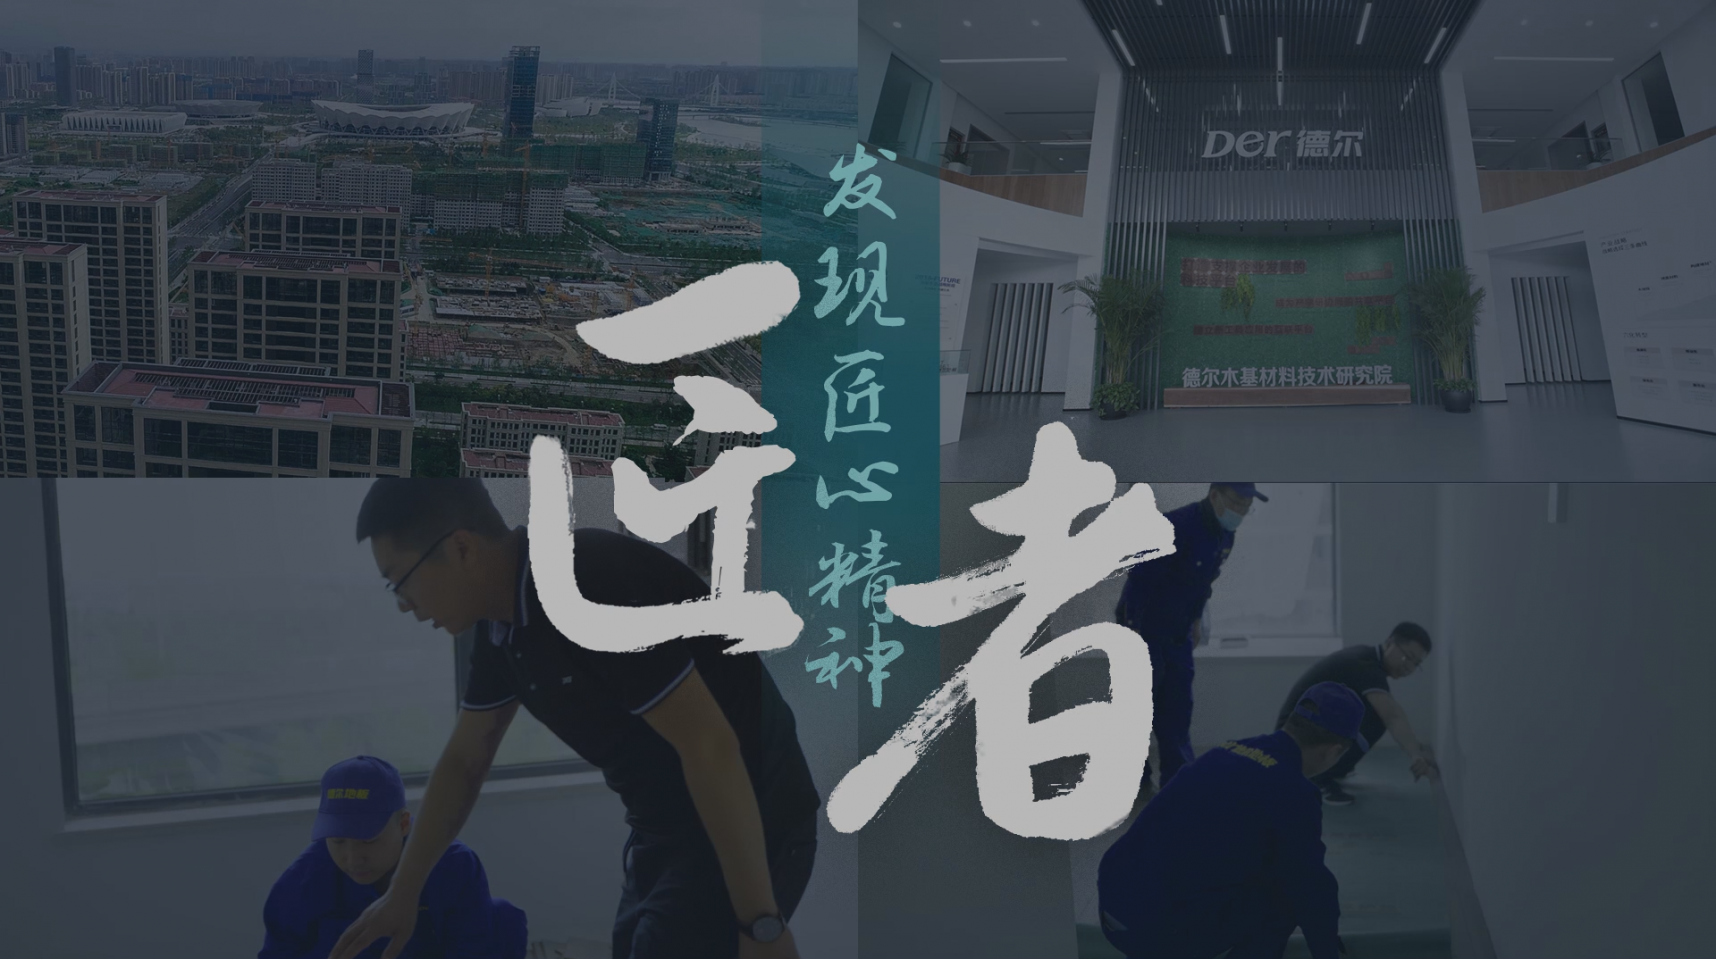 Der尊龙凯时中国地板大项目传播视频—超级现场之西安全运村